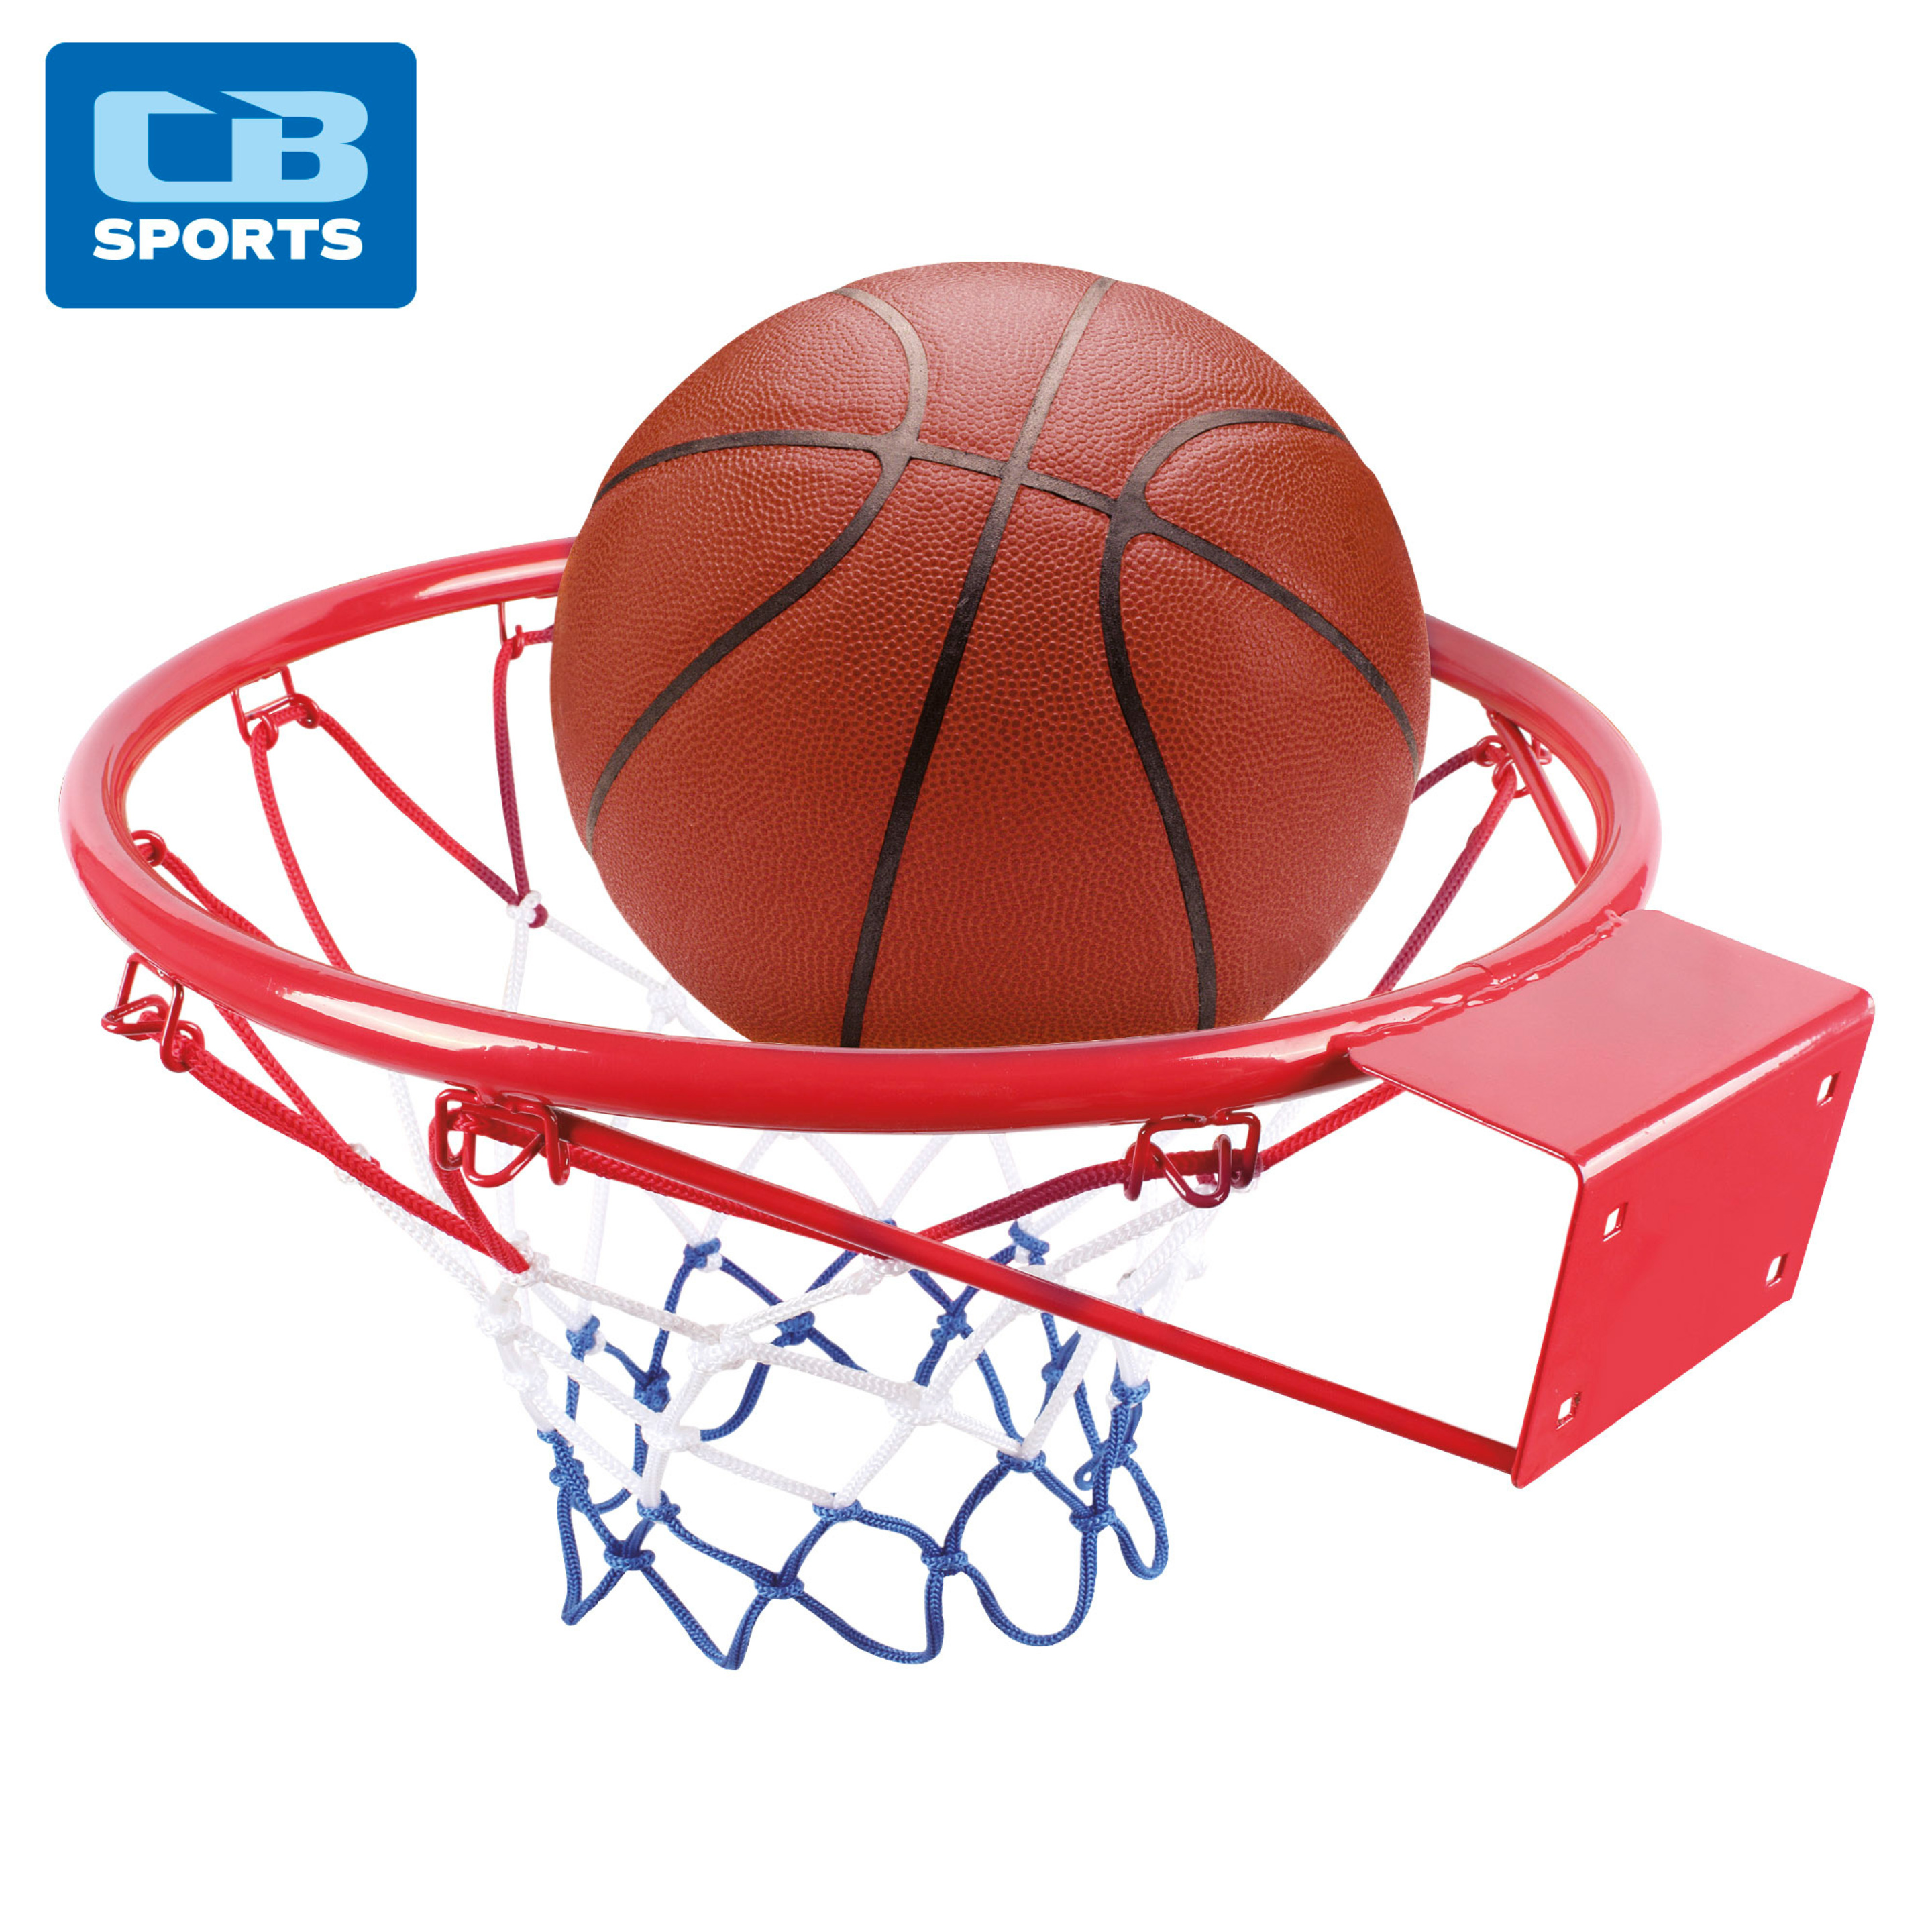 Canasta De Baloncesto De Pared C/pelota E Hinchador Cb Sports - Rojo  MKP